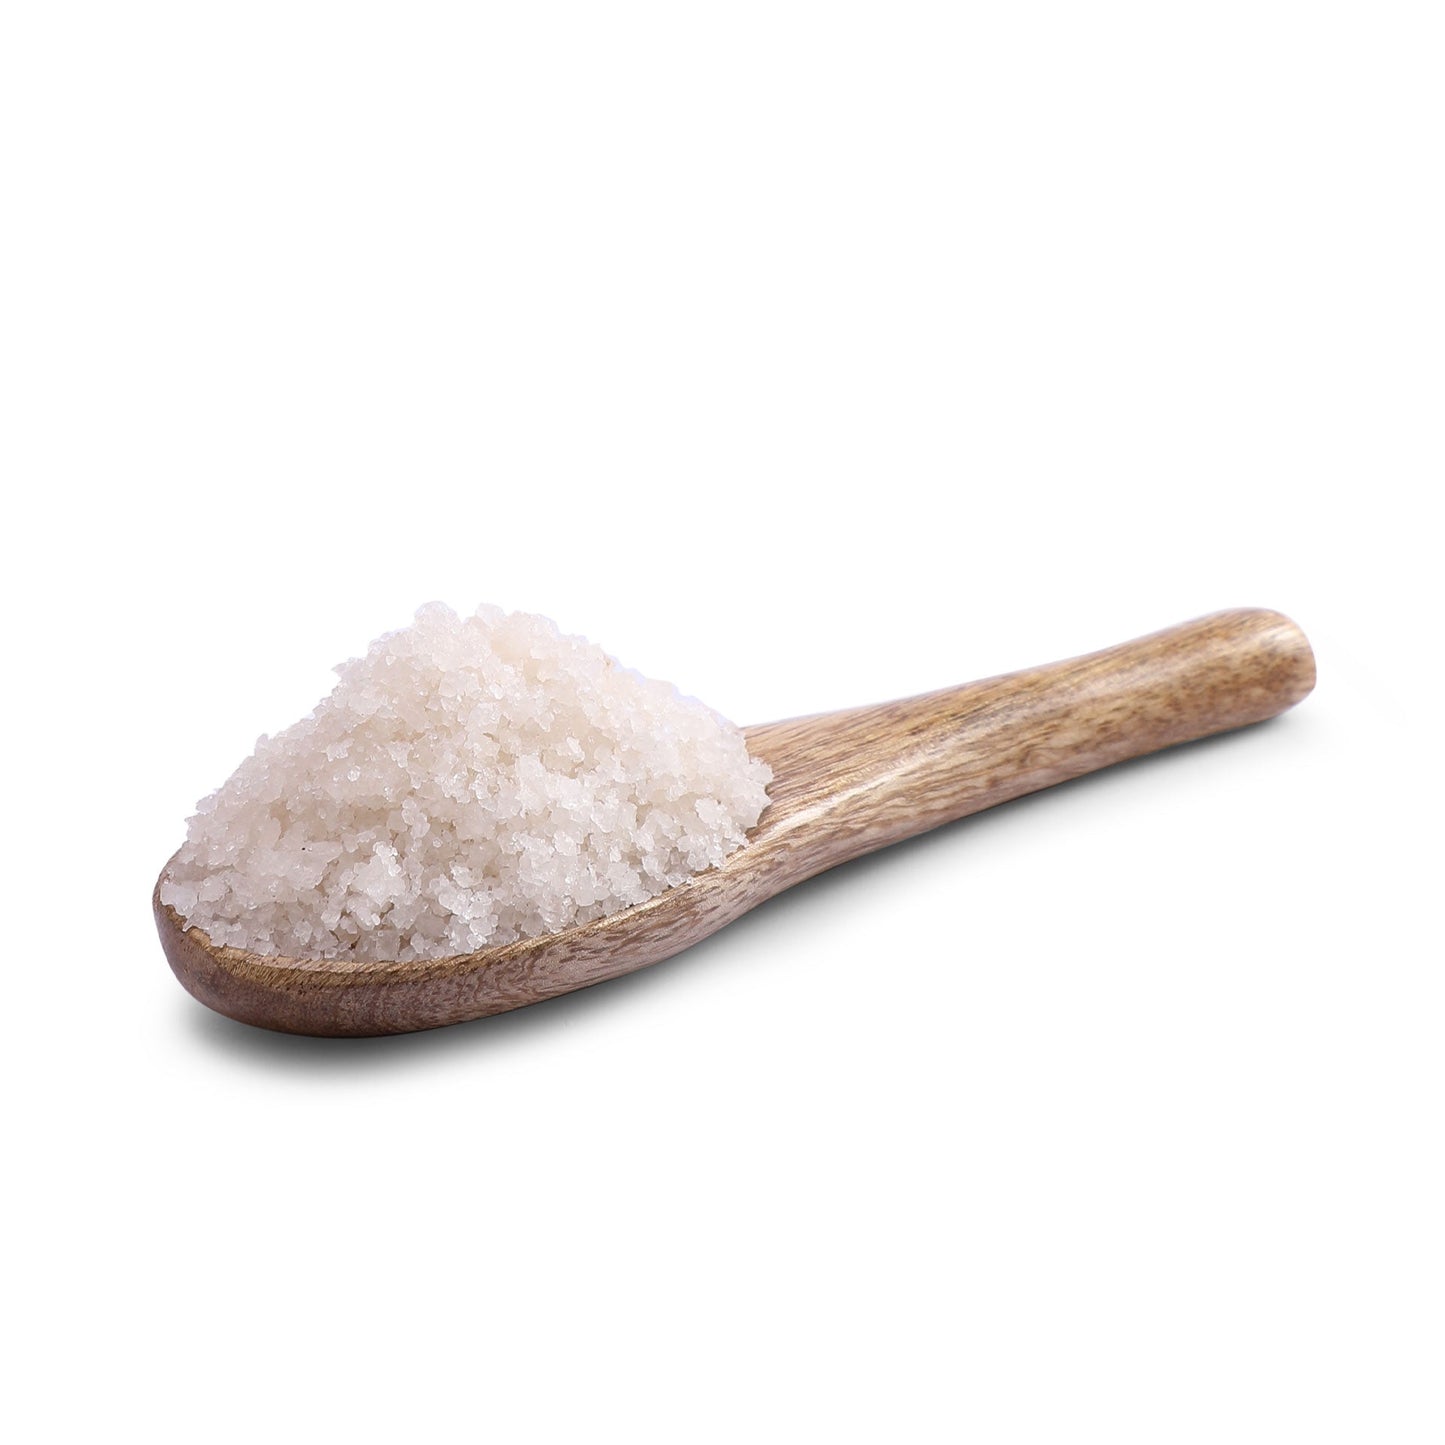 Organic Sea Salt 500g